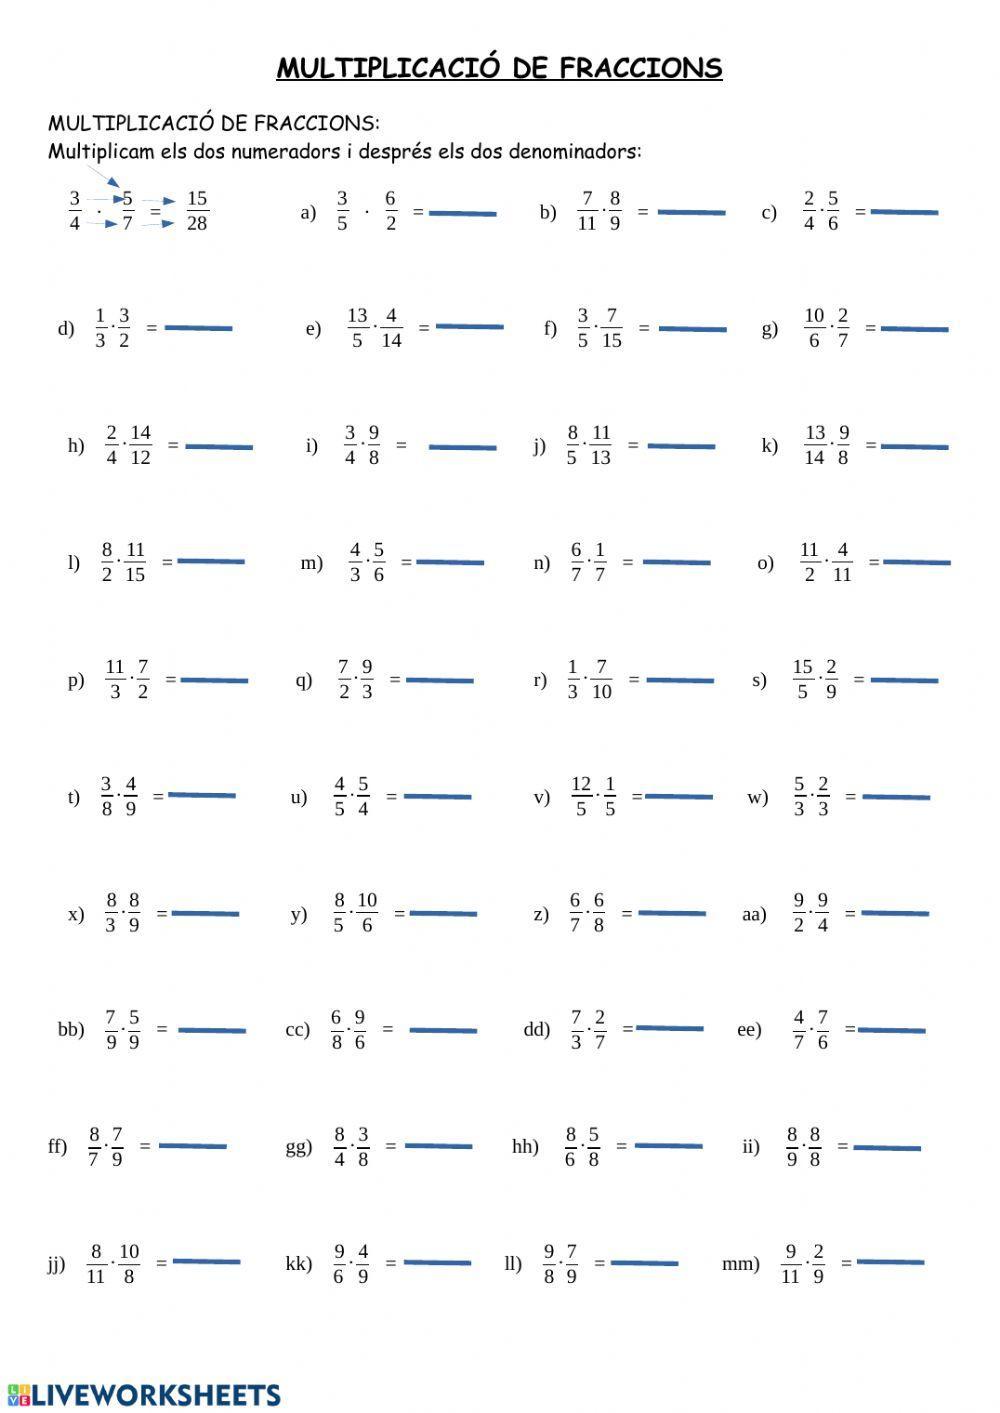 Multiplicació de fraccions